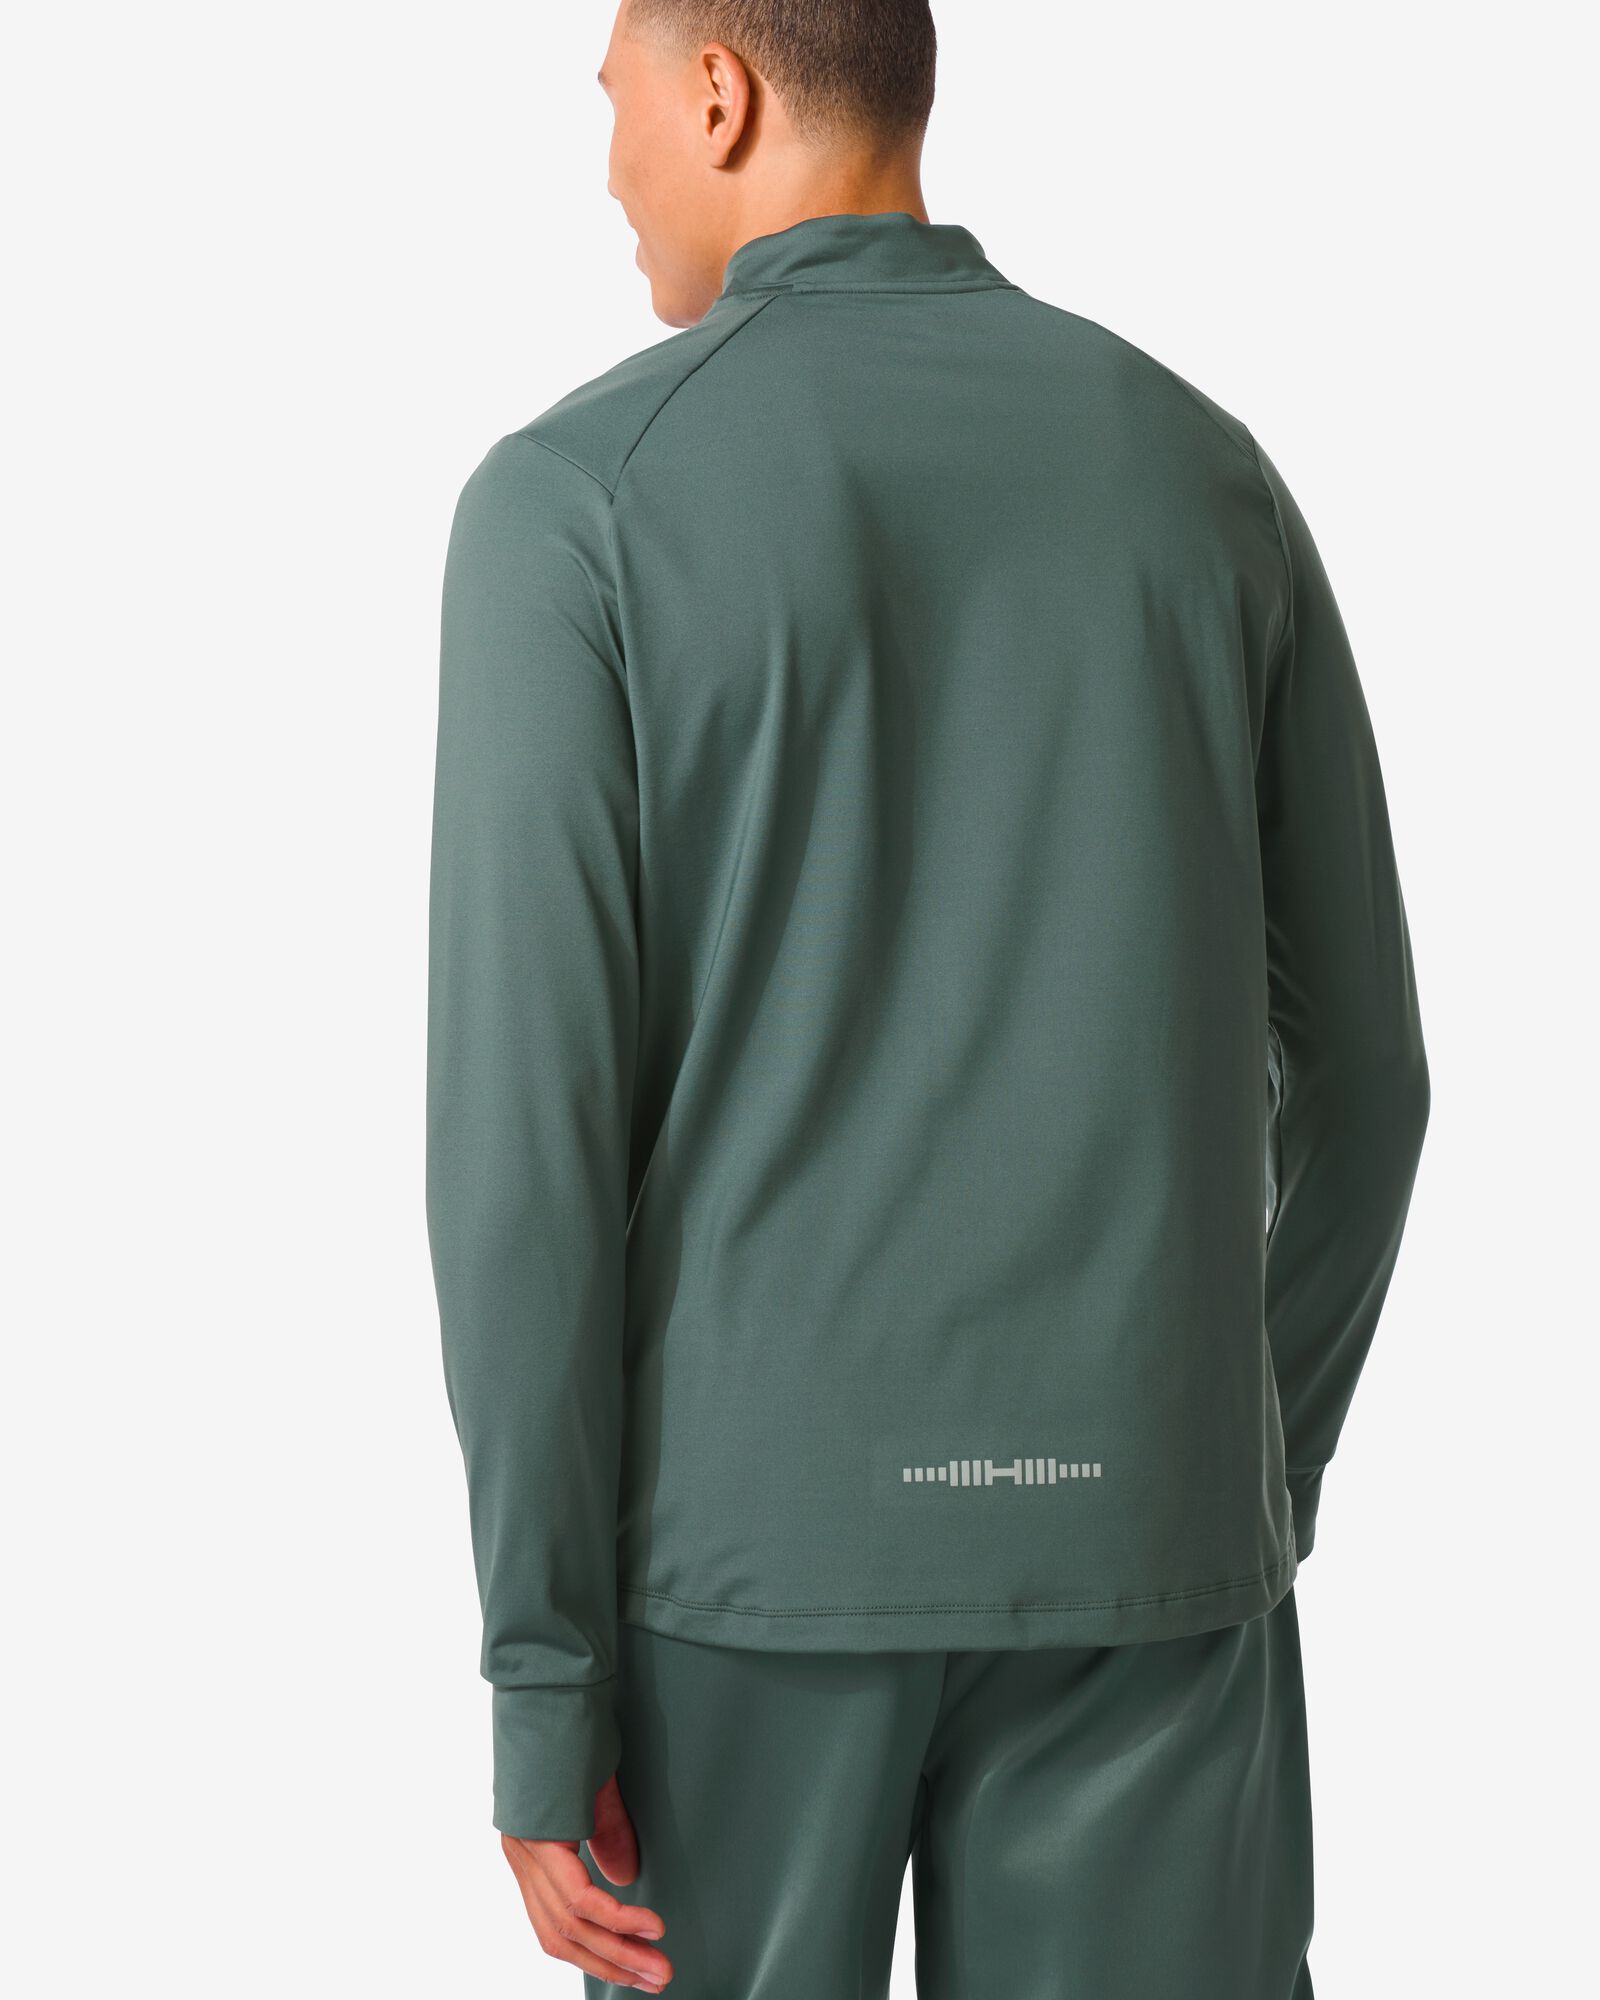 t-shirt sport polaire homme vert vert - 36090212GREEN - HEMA